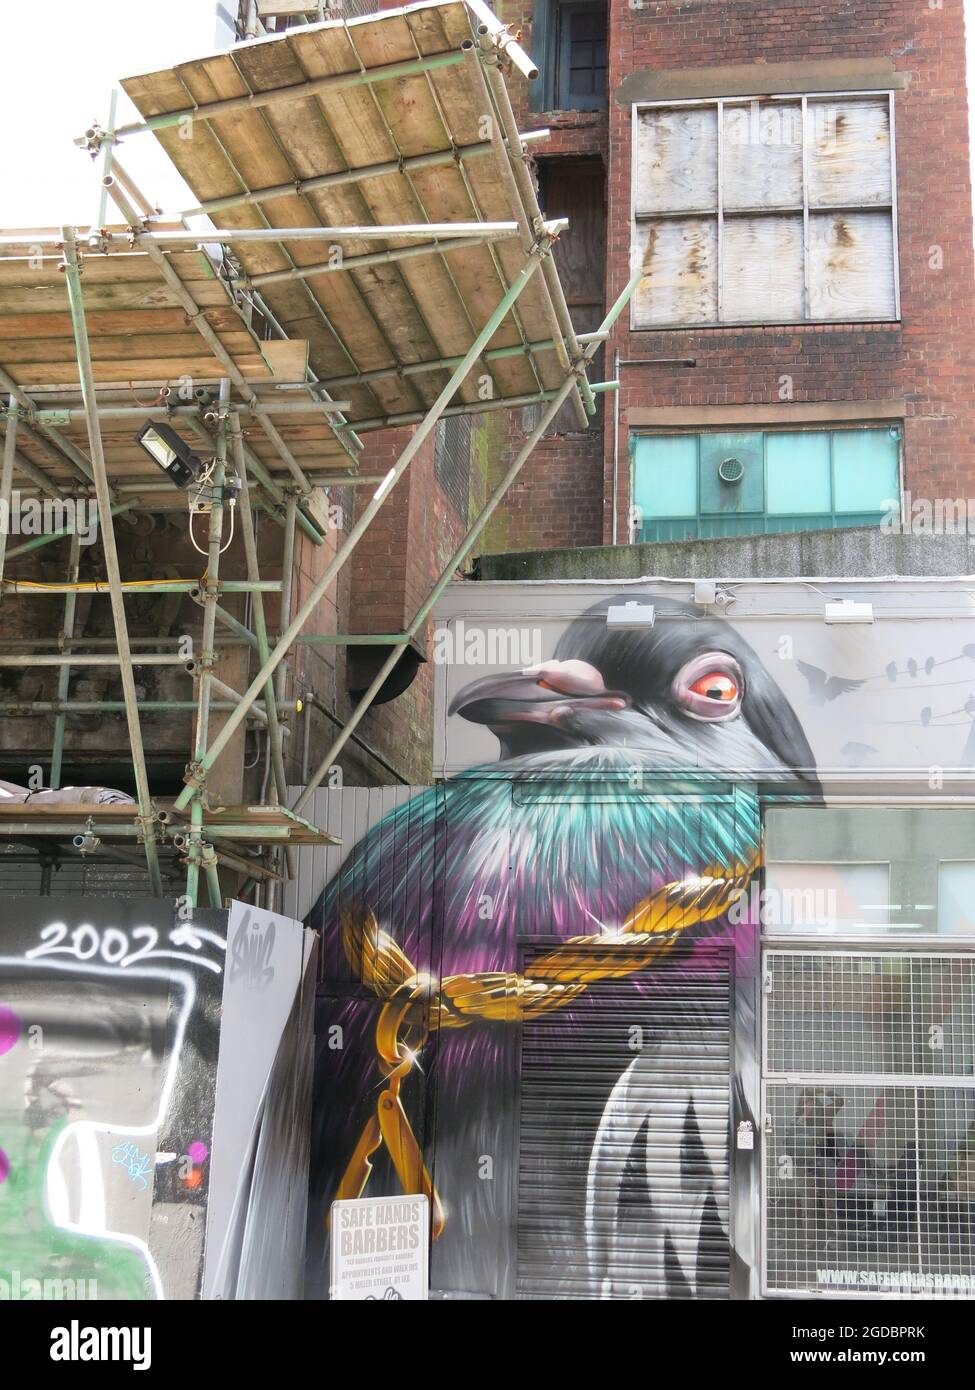 Es gibt einen Glasgow Mural Trail, auf dem Sie die Straßenkunst bewundern können, die zur Wiederbelebung des Stadtzentrums verwendet wird, einschließlich dieses farbenfrohen Vogels. Stockfoto